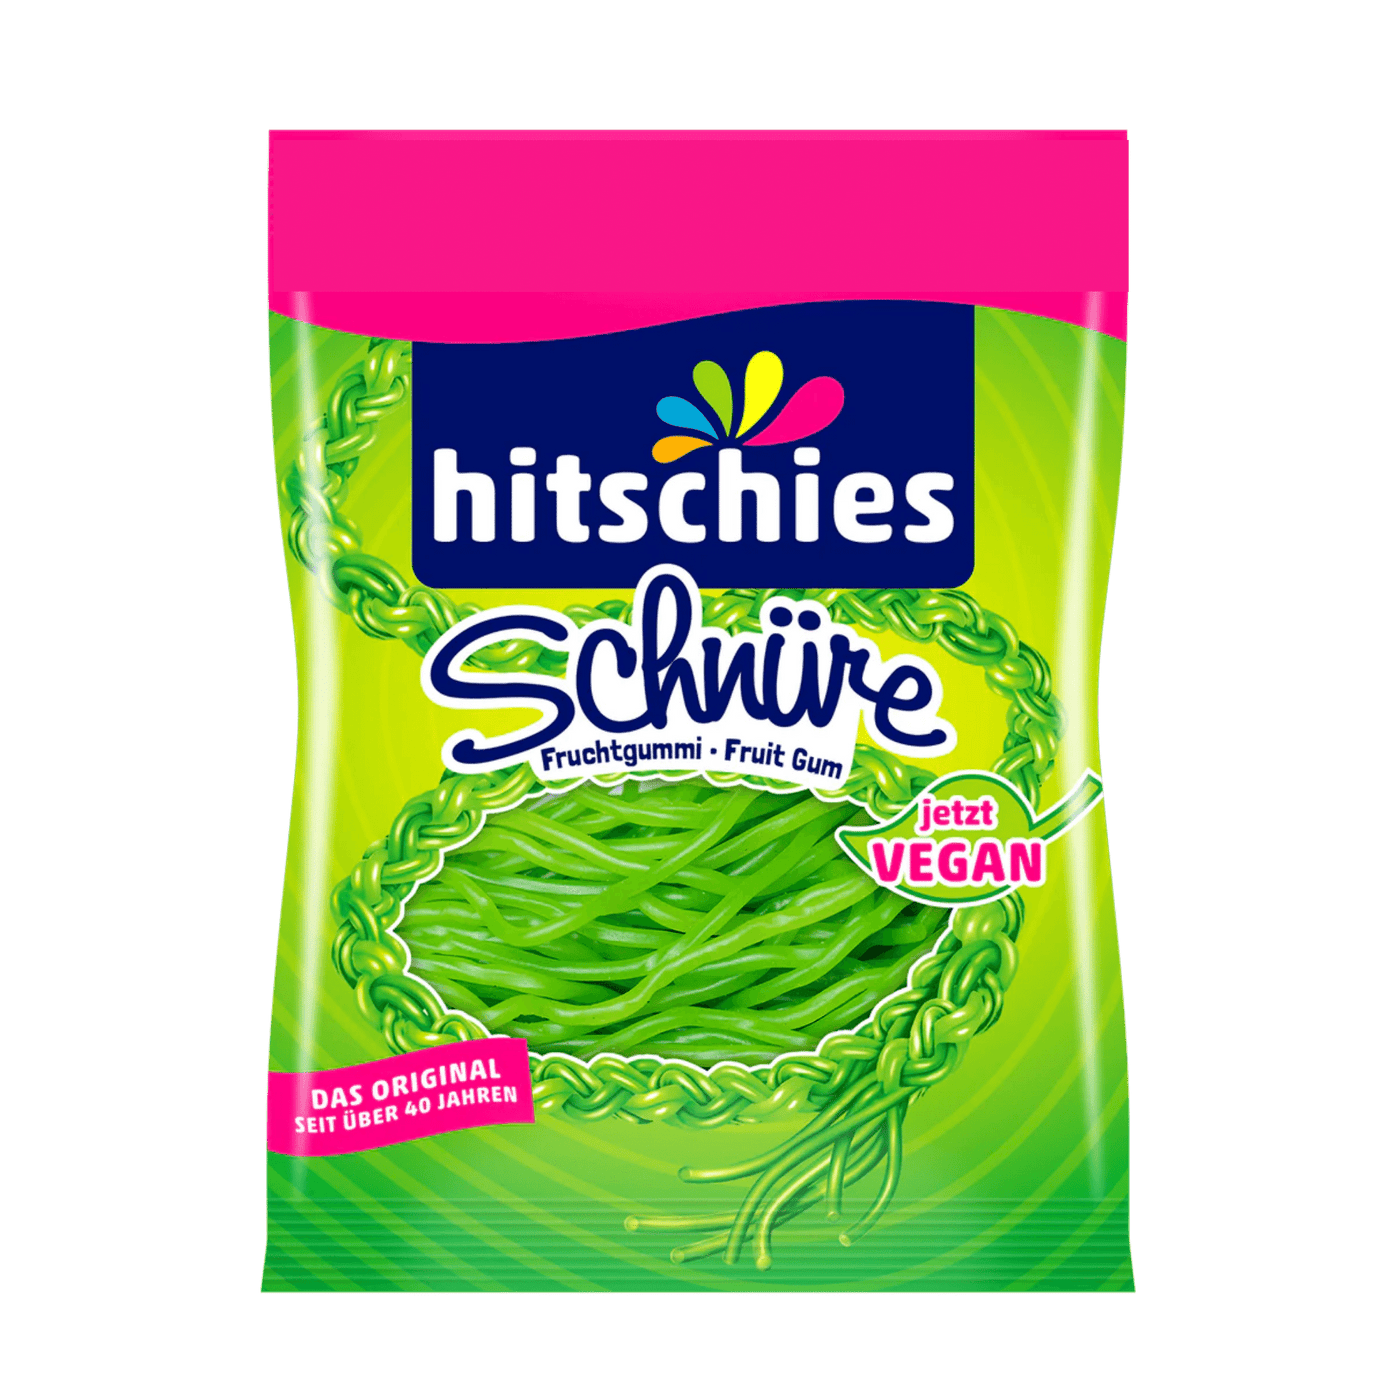 Hitschies - Schnüre - Allemagne